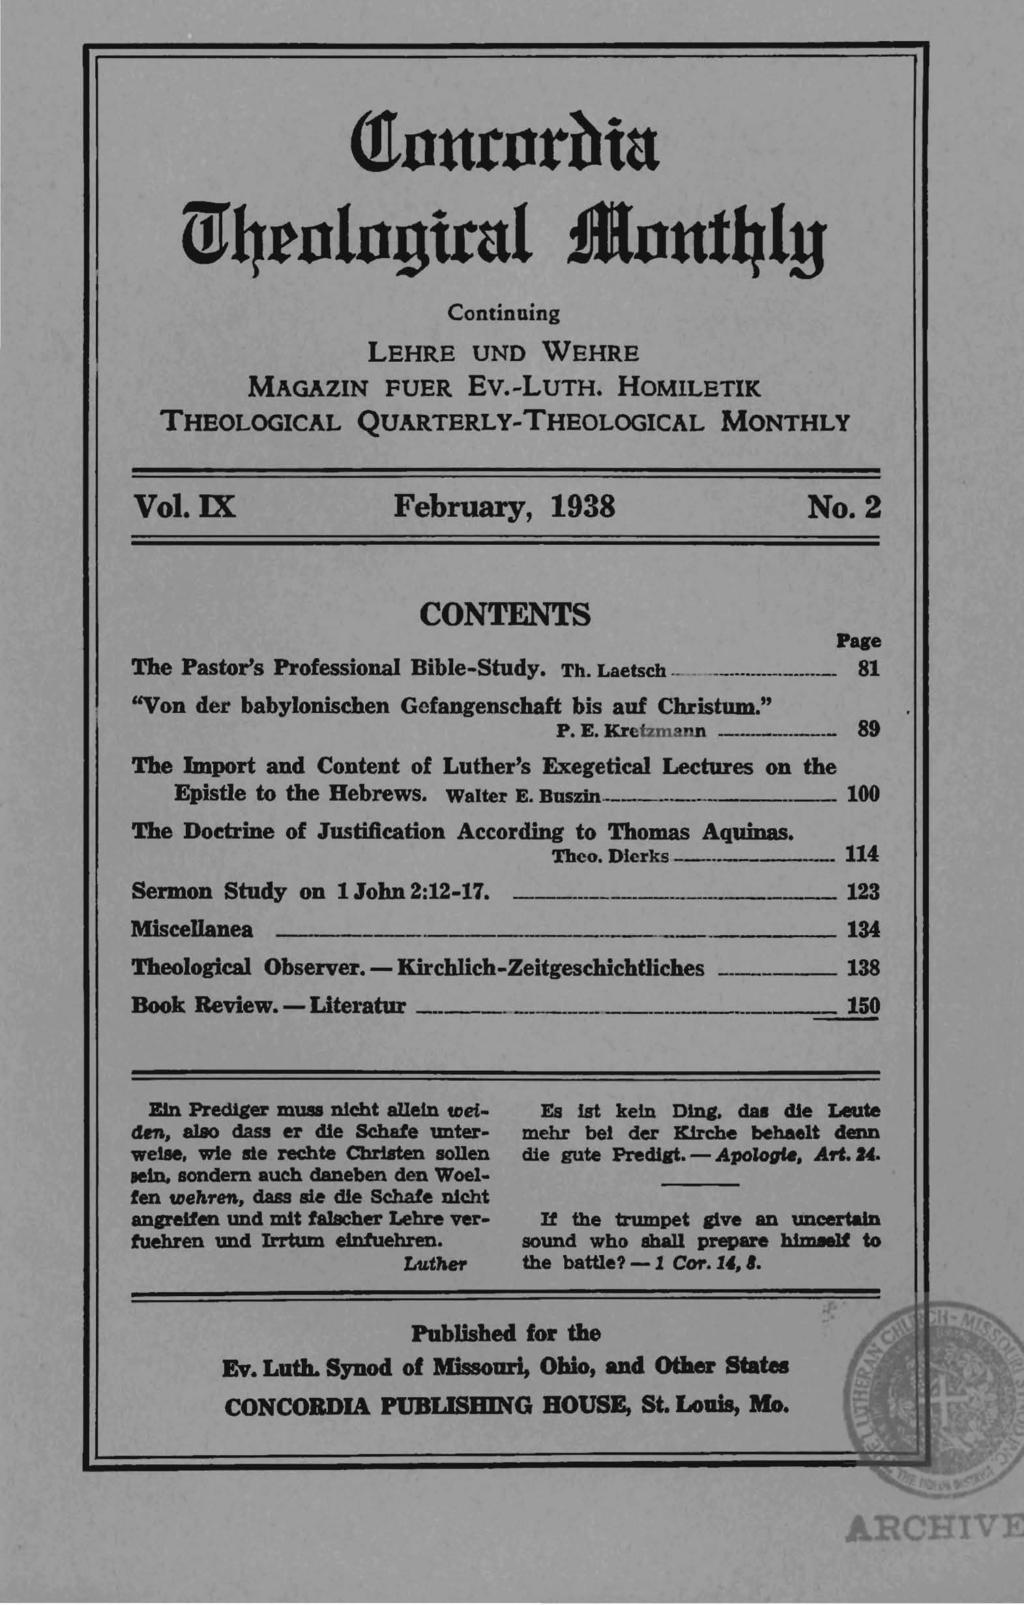 (!tnurnrbtu ml1rnlngitul flnut41y Continuing LEHRE UND VVEHRE MAGAZIN FUER Ev.-LuTH. HOMILETIK THEOLOGICAL QUARTERLY-THEOLOGICAL MONTHLY Vol. IX February, 1938 No.